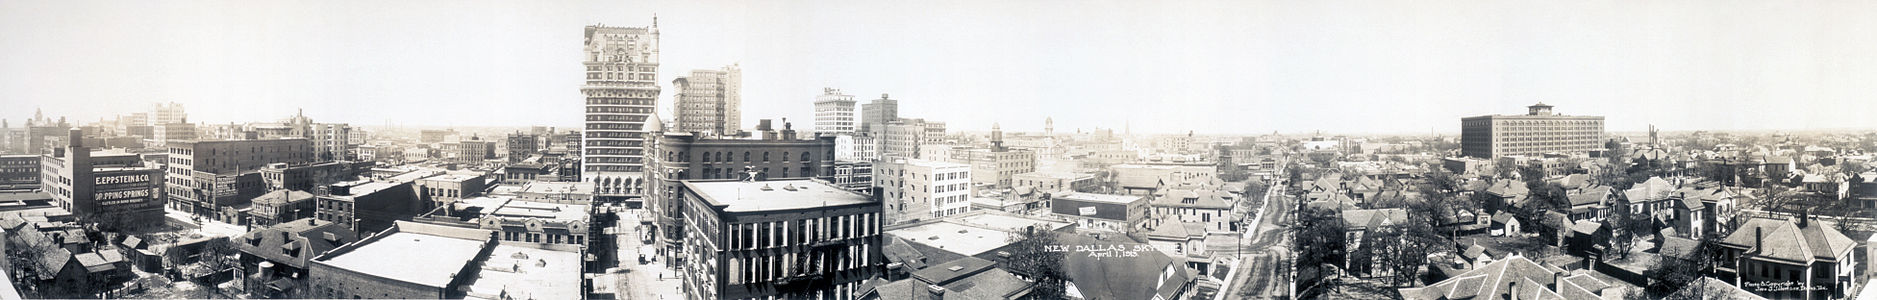 ABD'nin Teksas eyaletinin ulaşım merkezi Dallas şehrinin panoramik görünümü. Telif hakkı tarihi olarak 30 Ağustos 1912 gösterilmektedir. Bu fotoğraf muhtemelen aynı yıl çekilmiştir. Günümüzde çevresindeki Fort Worth, Arlington gibi şehirleriye birlikte oluşturuşlan metropol bölgesinin nüfusu ABD beşincisidir. (Üreten: Johnson & Rogers)